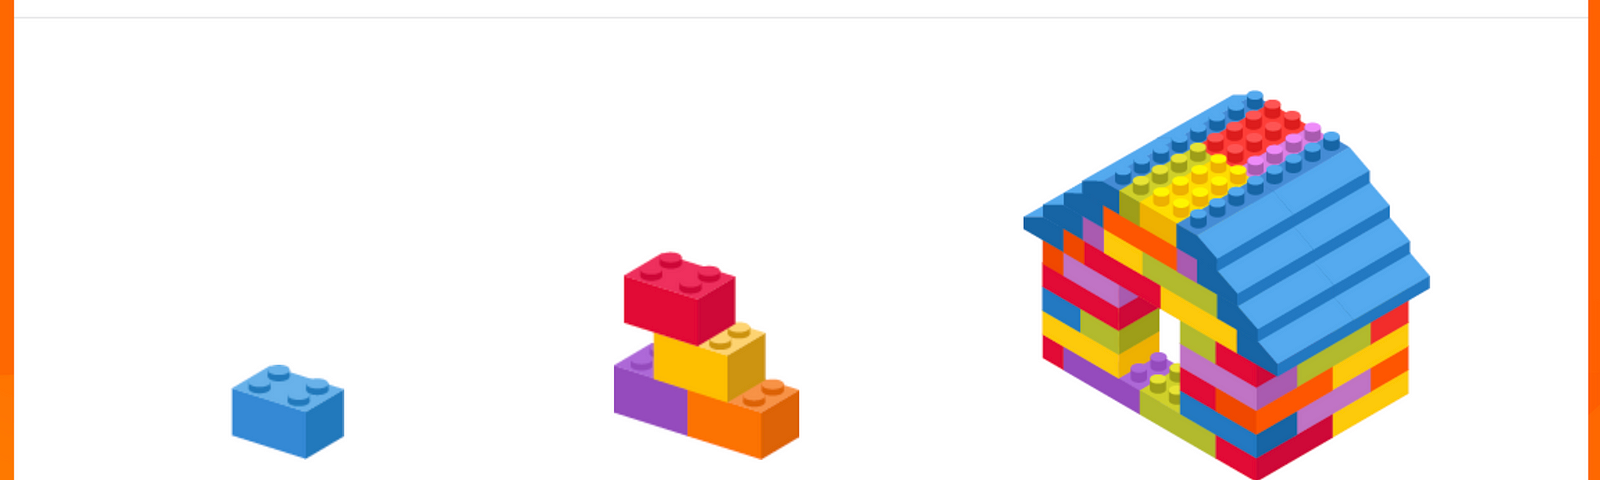 Slide mostrando uma pecinha de lego, com indicativo de que ela é um token. Ao lado, quatro pecinhas juntas, indicando que isso é um componente. Por fim, uma casinha inteira de Lego, indicando que ela é a solução completa (site, página de um produto ou funcionalidade).